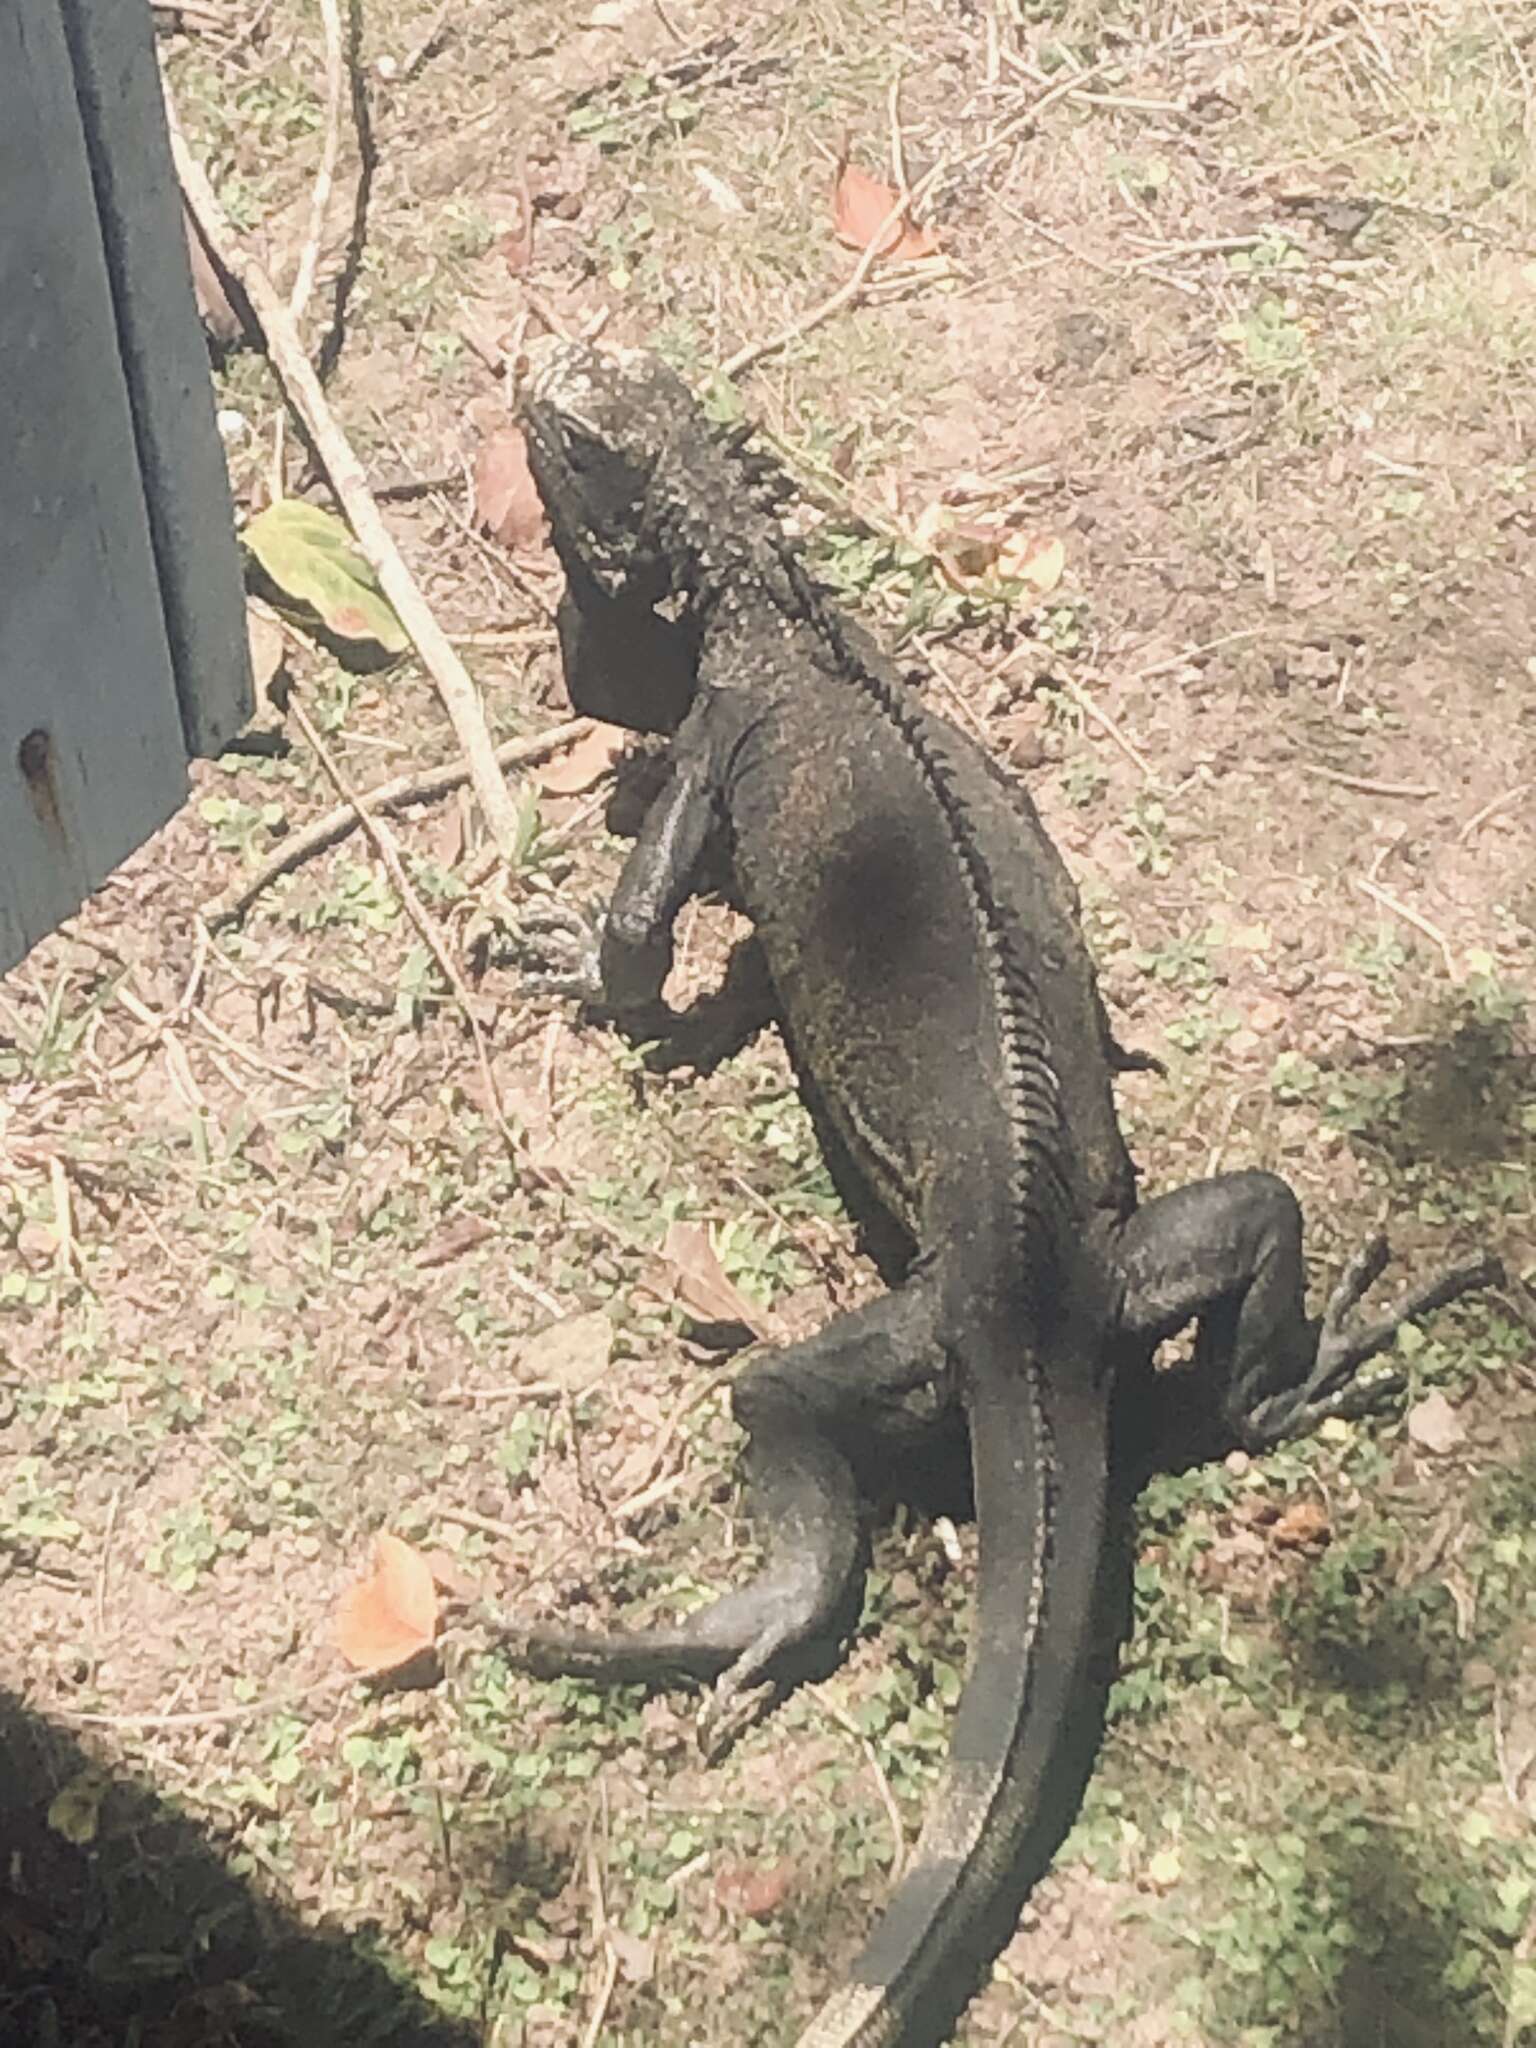 Image of Iguana iguana melanoderma